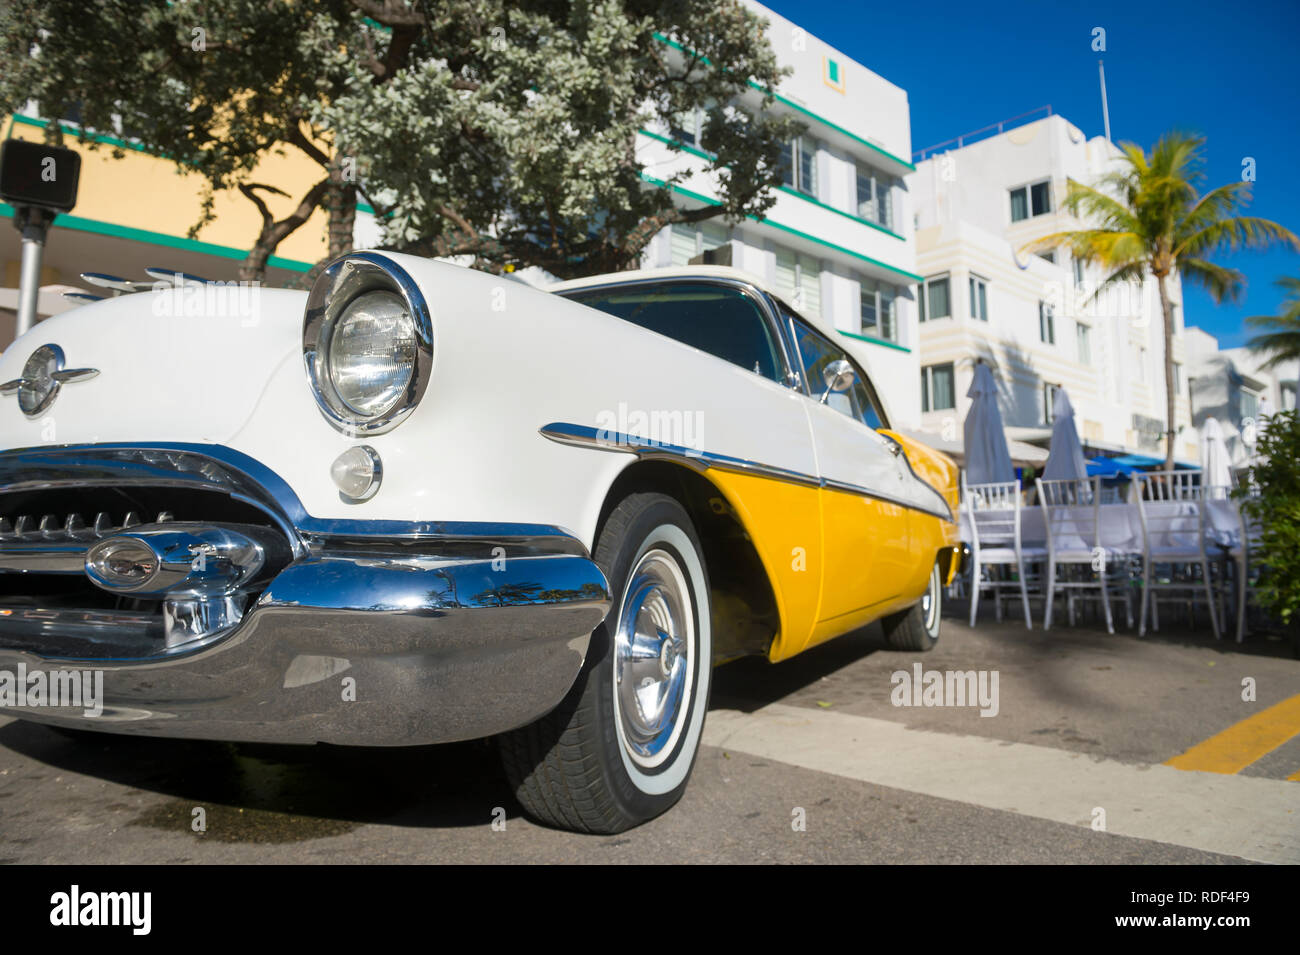 MIAMI - 31 de diciembre de 2018: Brillante vista escénica del clásico coche americano complementando la arquitectura Art Deco de Ocean Drive en South Beach. Foto de stock